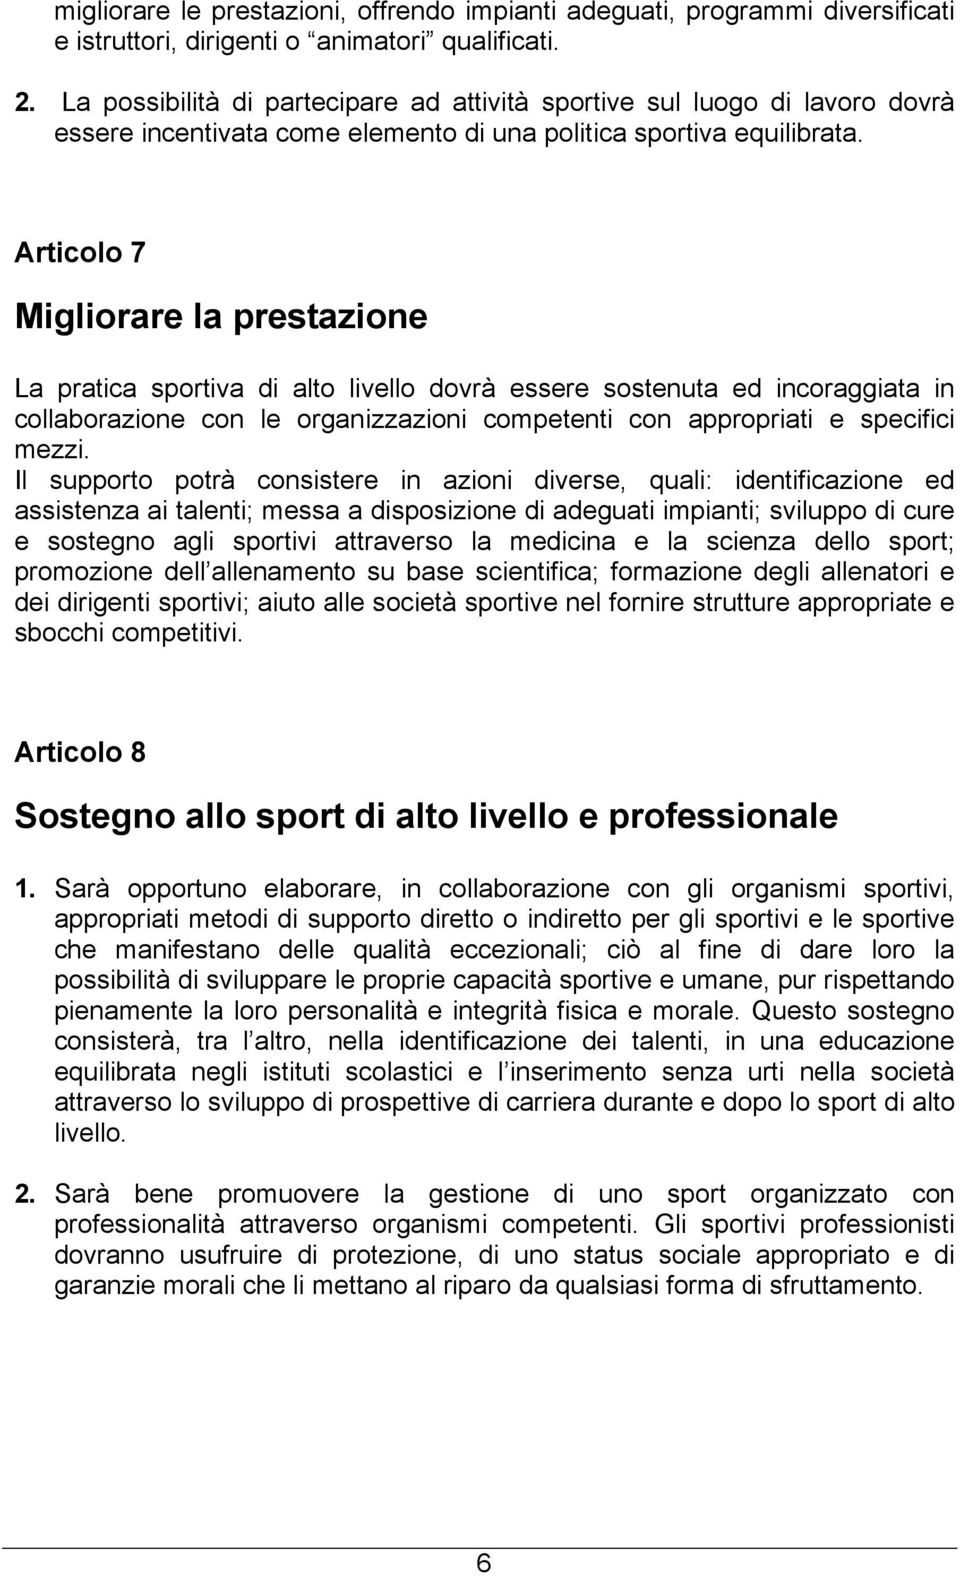 Articolo 7 Migliorare la prestazione La pratica sportiva di alto livello dovrà essere sostenuta ed incoraggiata in collaborazione con le organizzazioni competenti con appropriati e specifici mezzi.